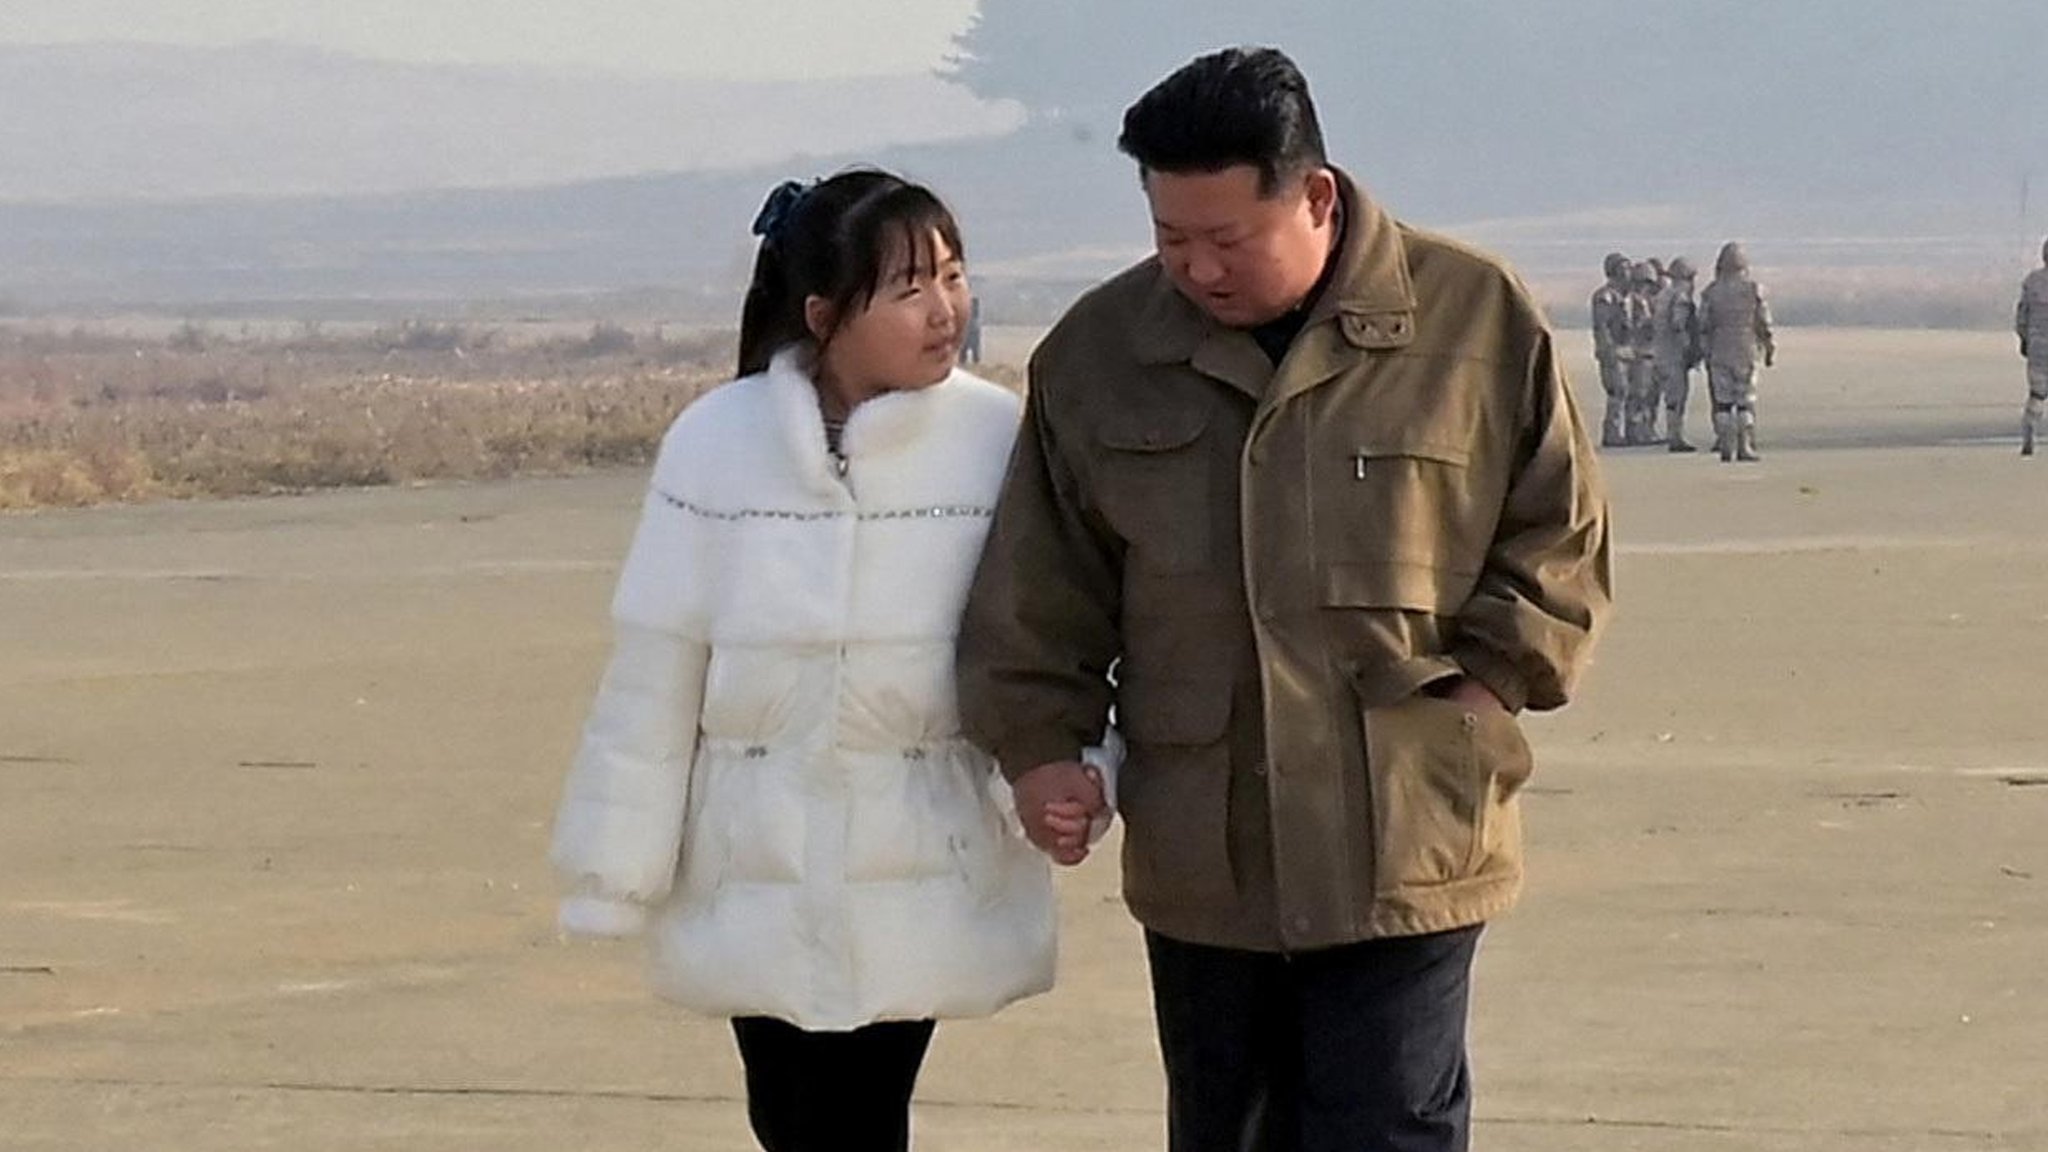 Kim North Korea Porn - North Korea's leader Kim reveals his daughter in rare appearance - BBC News